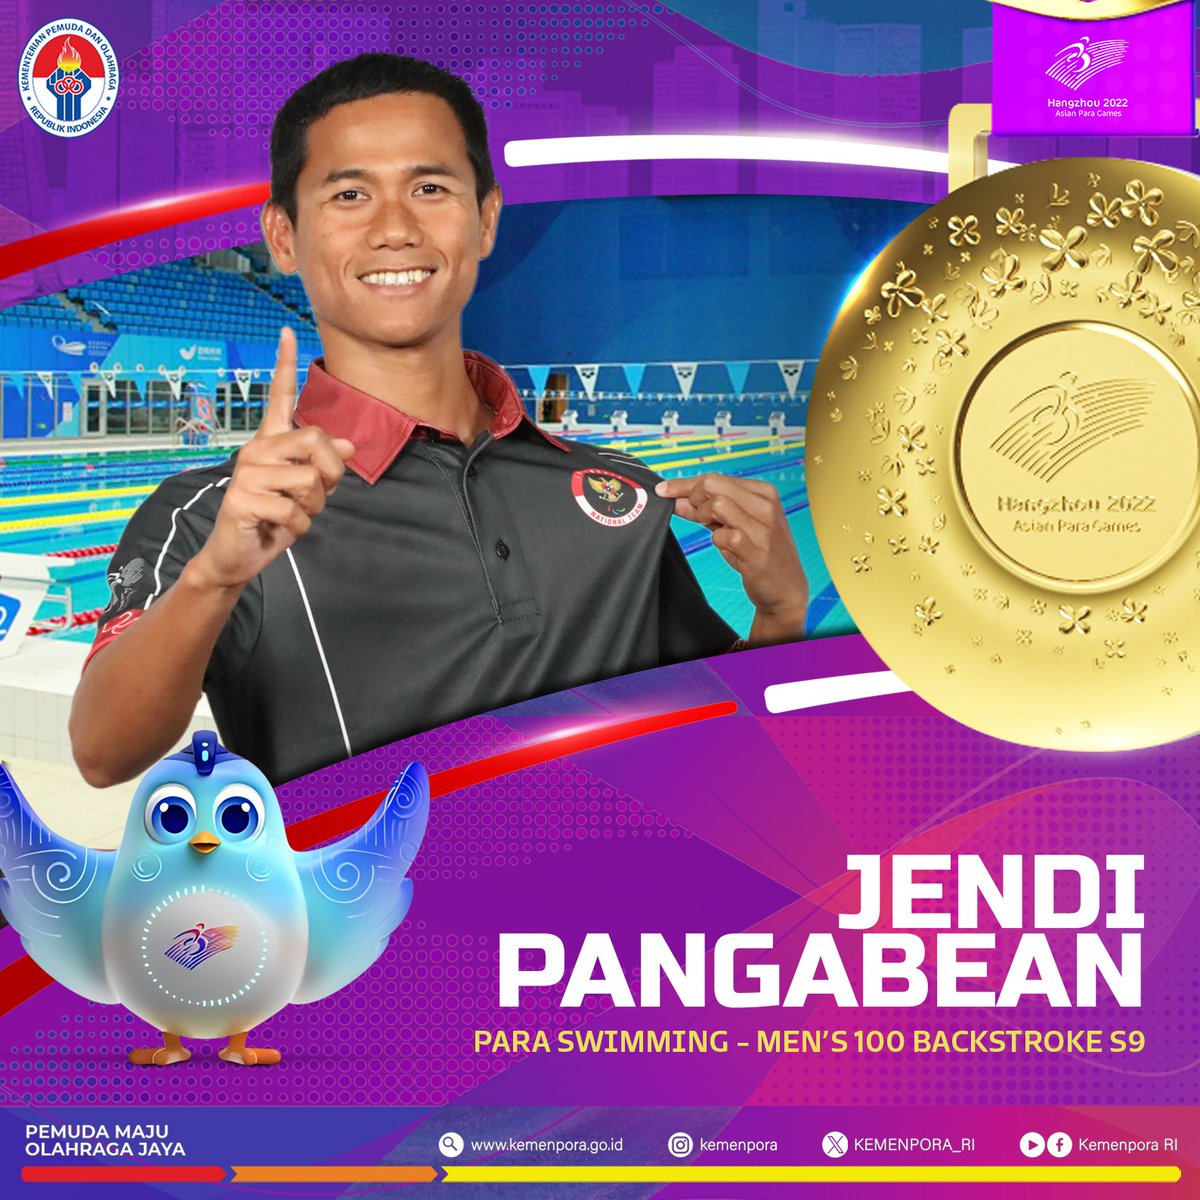 EMAS KE-25 UNTUK INDONESIA!!

Jendi Pangabean berhasil mempersembahkan medali emas bagi Indonesia di nomor Men's 100m Backstroke S9.

Jendi meraih posisi pertama dengan catatan waktu 1:05.74

Selamat Jendi!

#Kemenpora
#PemudaMajuOlahragaJaya
#AsianParaGames
#Hangzhou2022